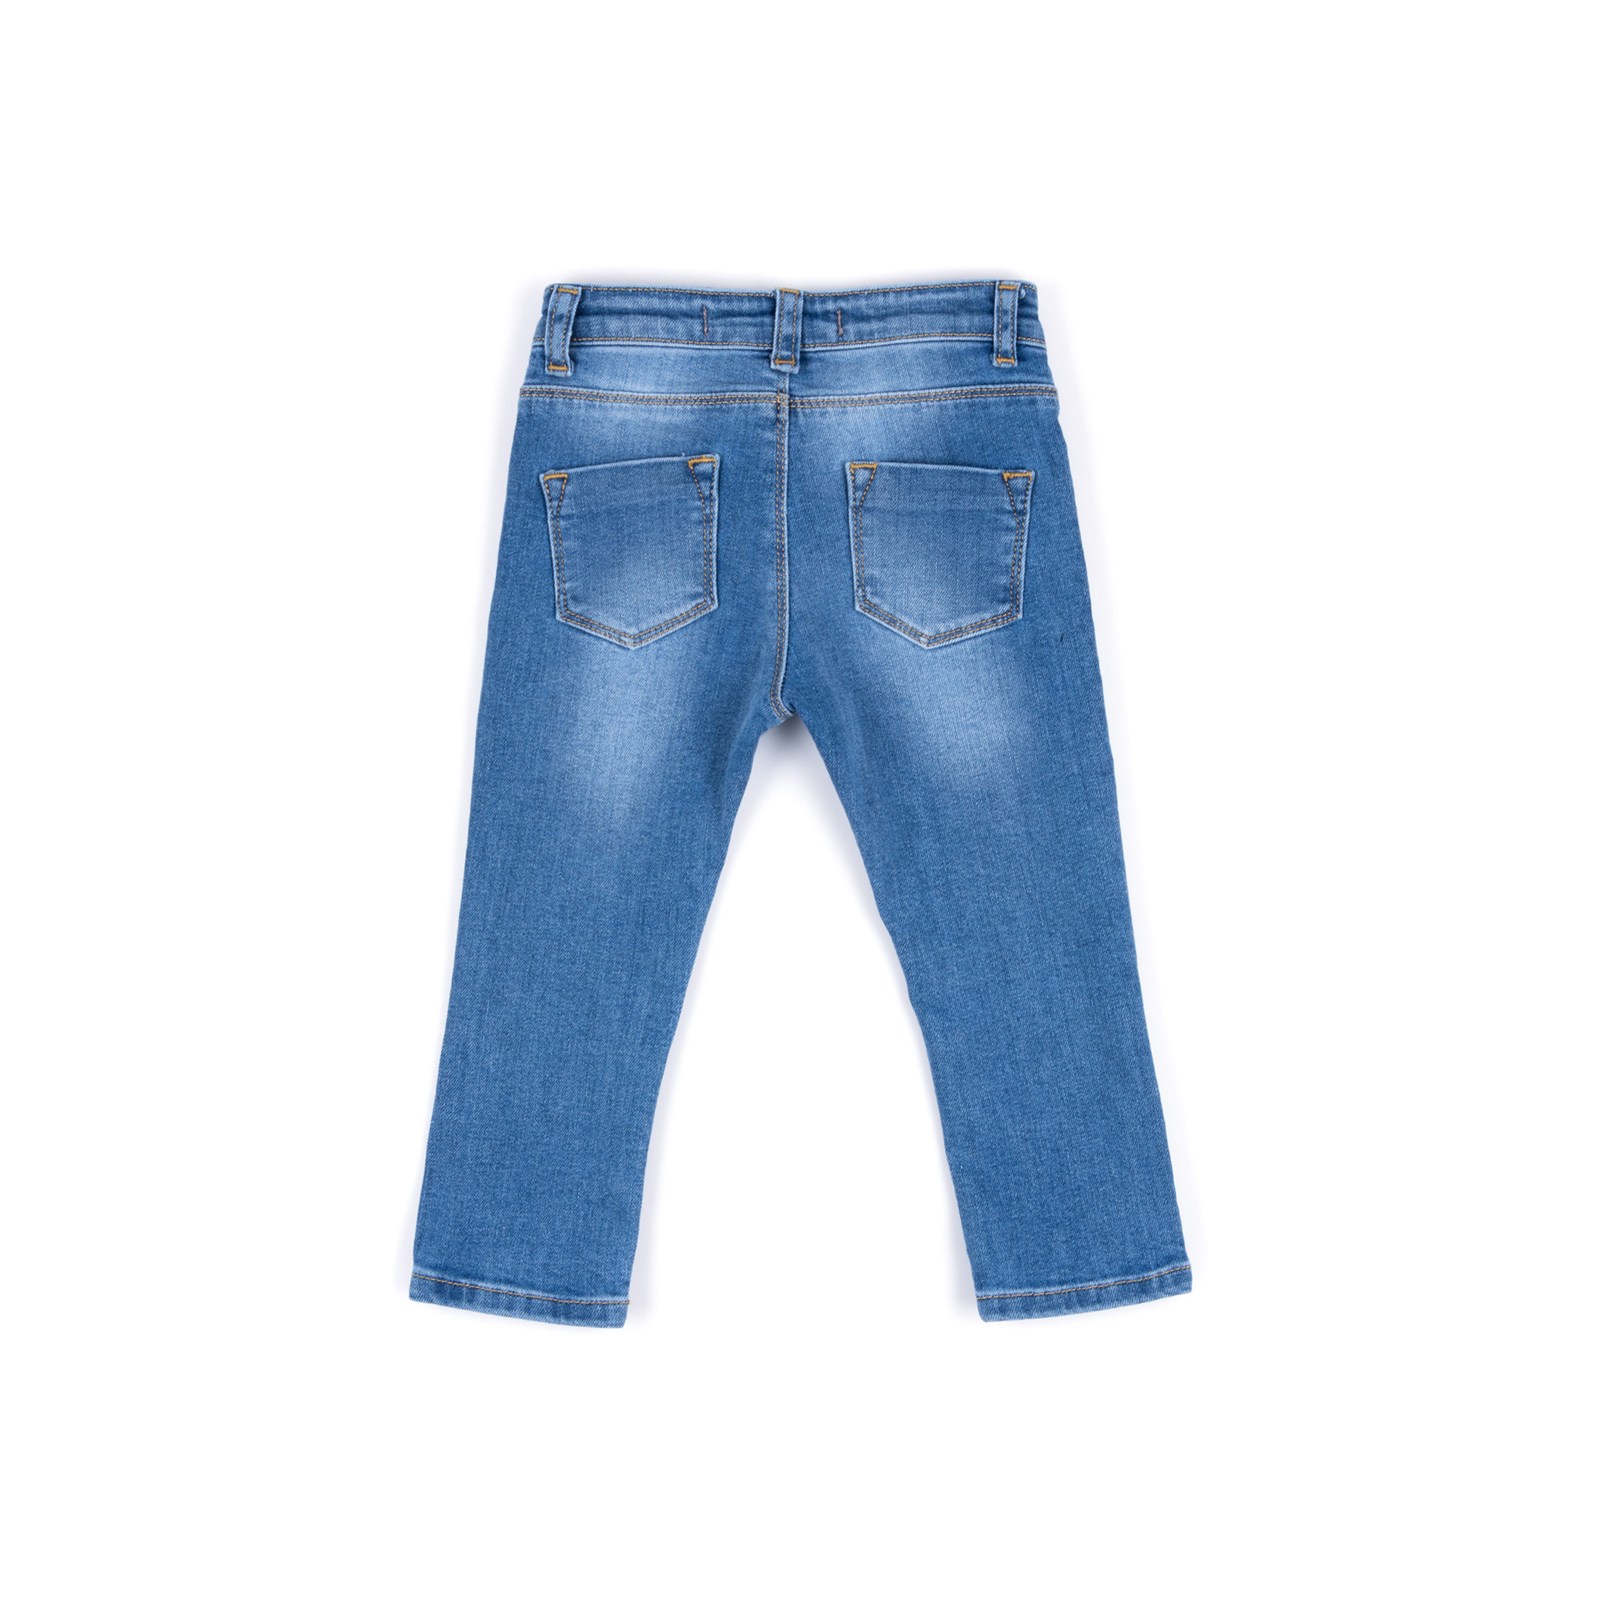 Джинсы Breeze джинсовые с цветочками (OZ-17703-74G-jeans) изображение 4